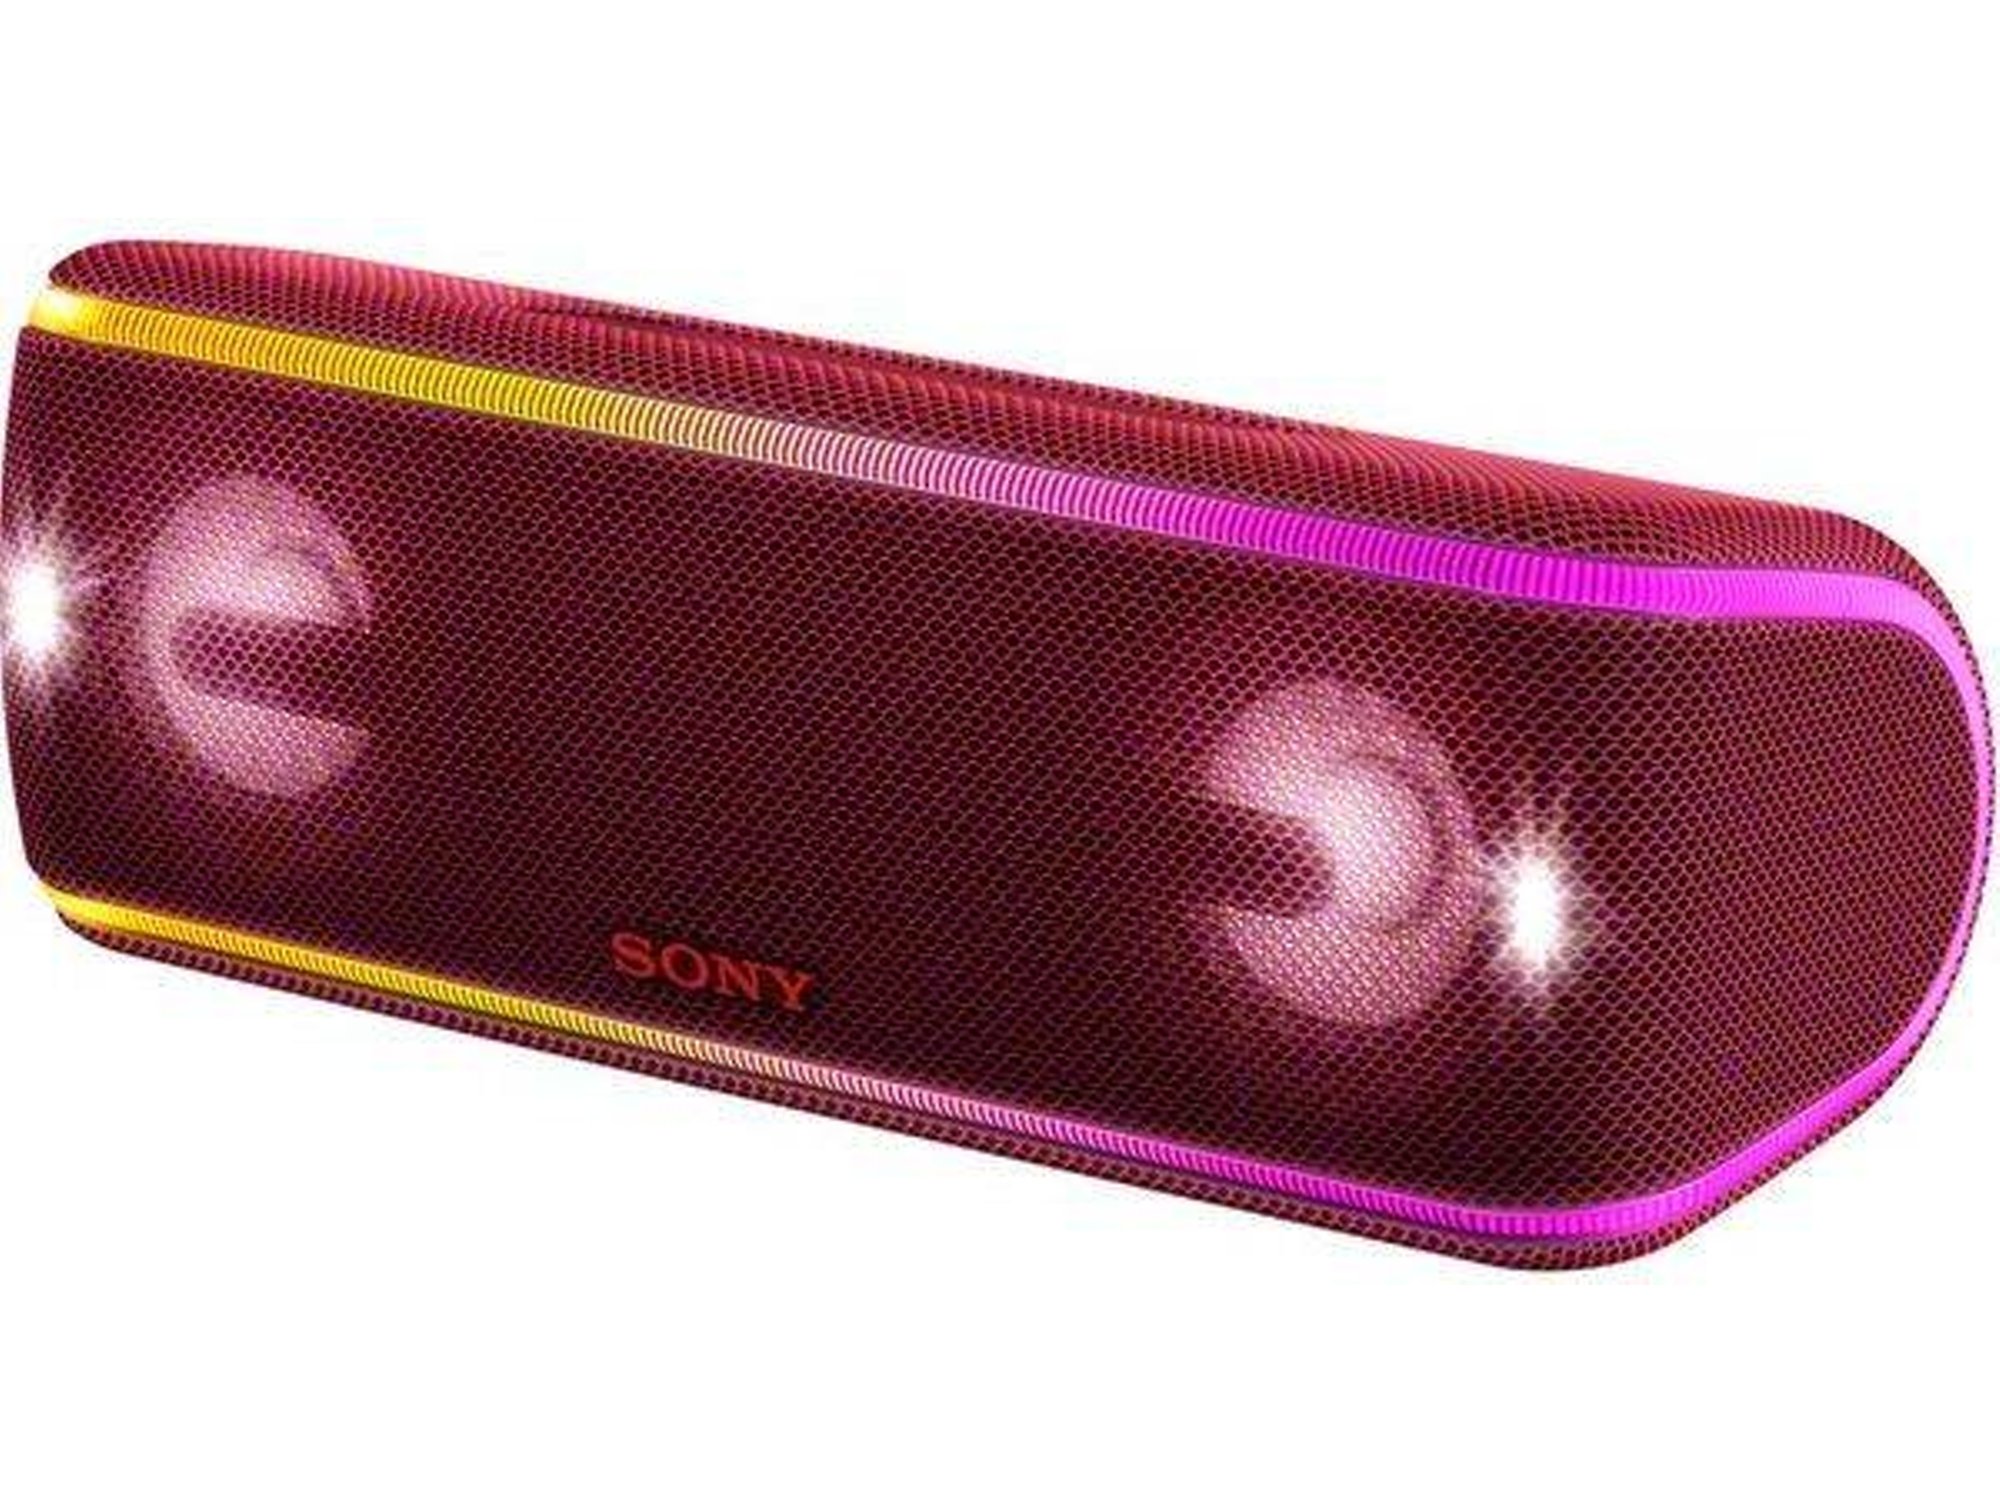 Altavoz Sony Srsxb41 extra y resistente agua srsxb41b bluetooth rojo srsxb41r modo live party booster luces de fiesta llamativas conector usb cargar smartphone color srsxb41r.eu8 alcance 30 autonomía 24 nfc xb41 1500g 4.2